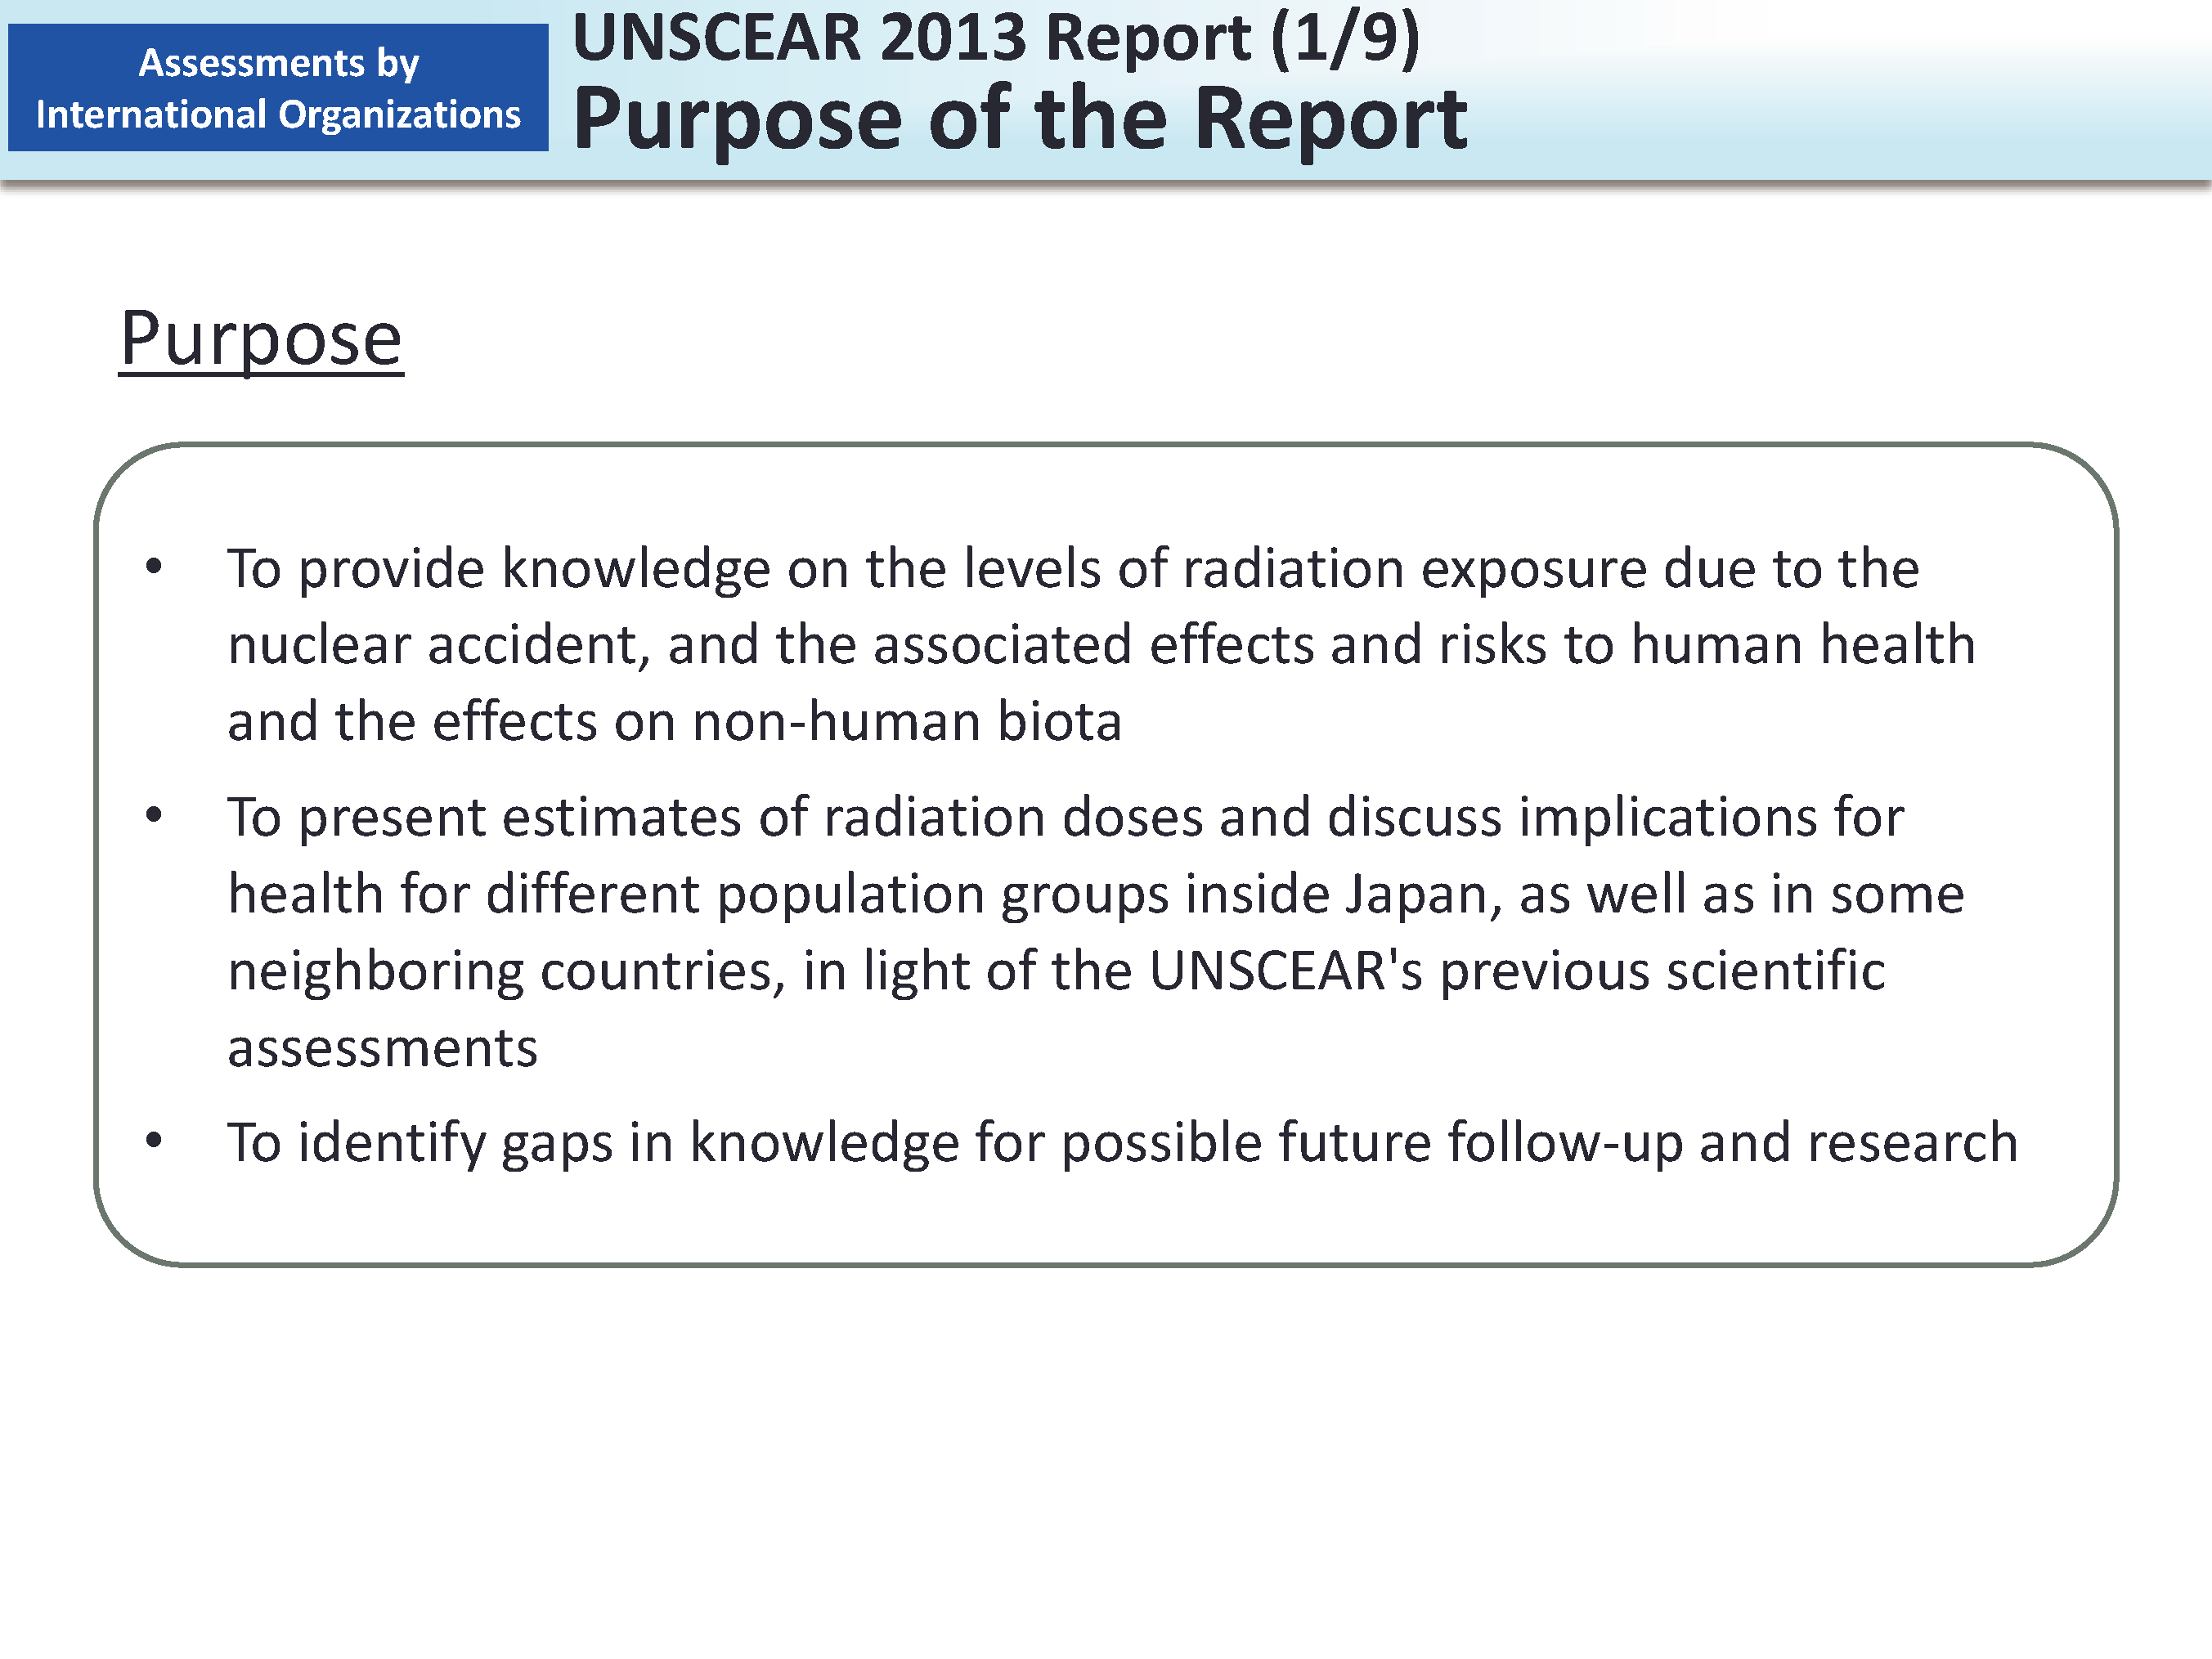 UNSCEAR 2013 Report (1/9) Purpose of the Report_Figure